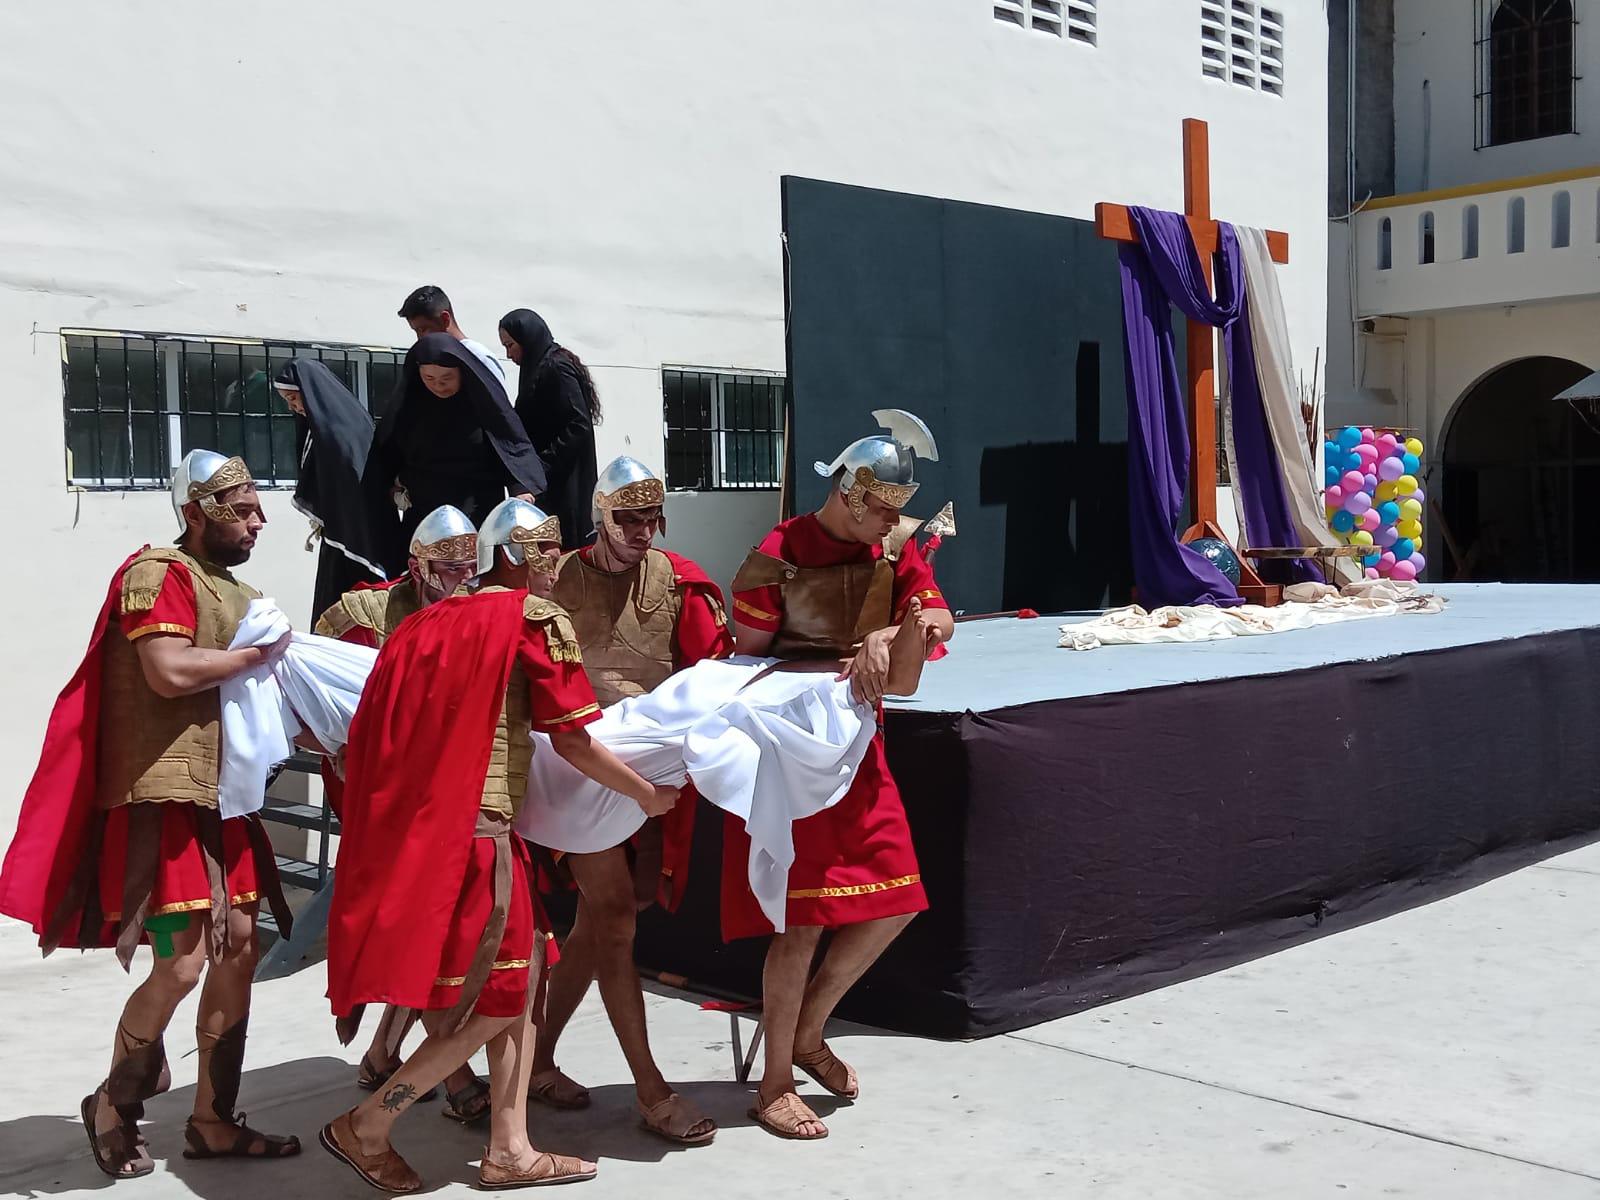 $!Mazatlecos y turistas atestiguan el Viacrucis Viviente en calles del Centro de puerto